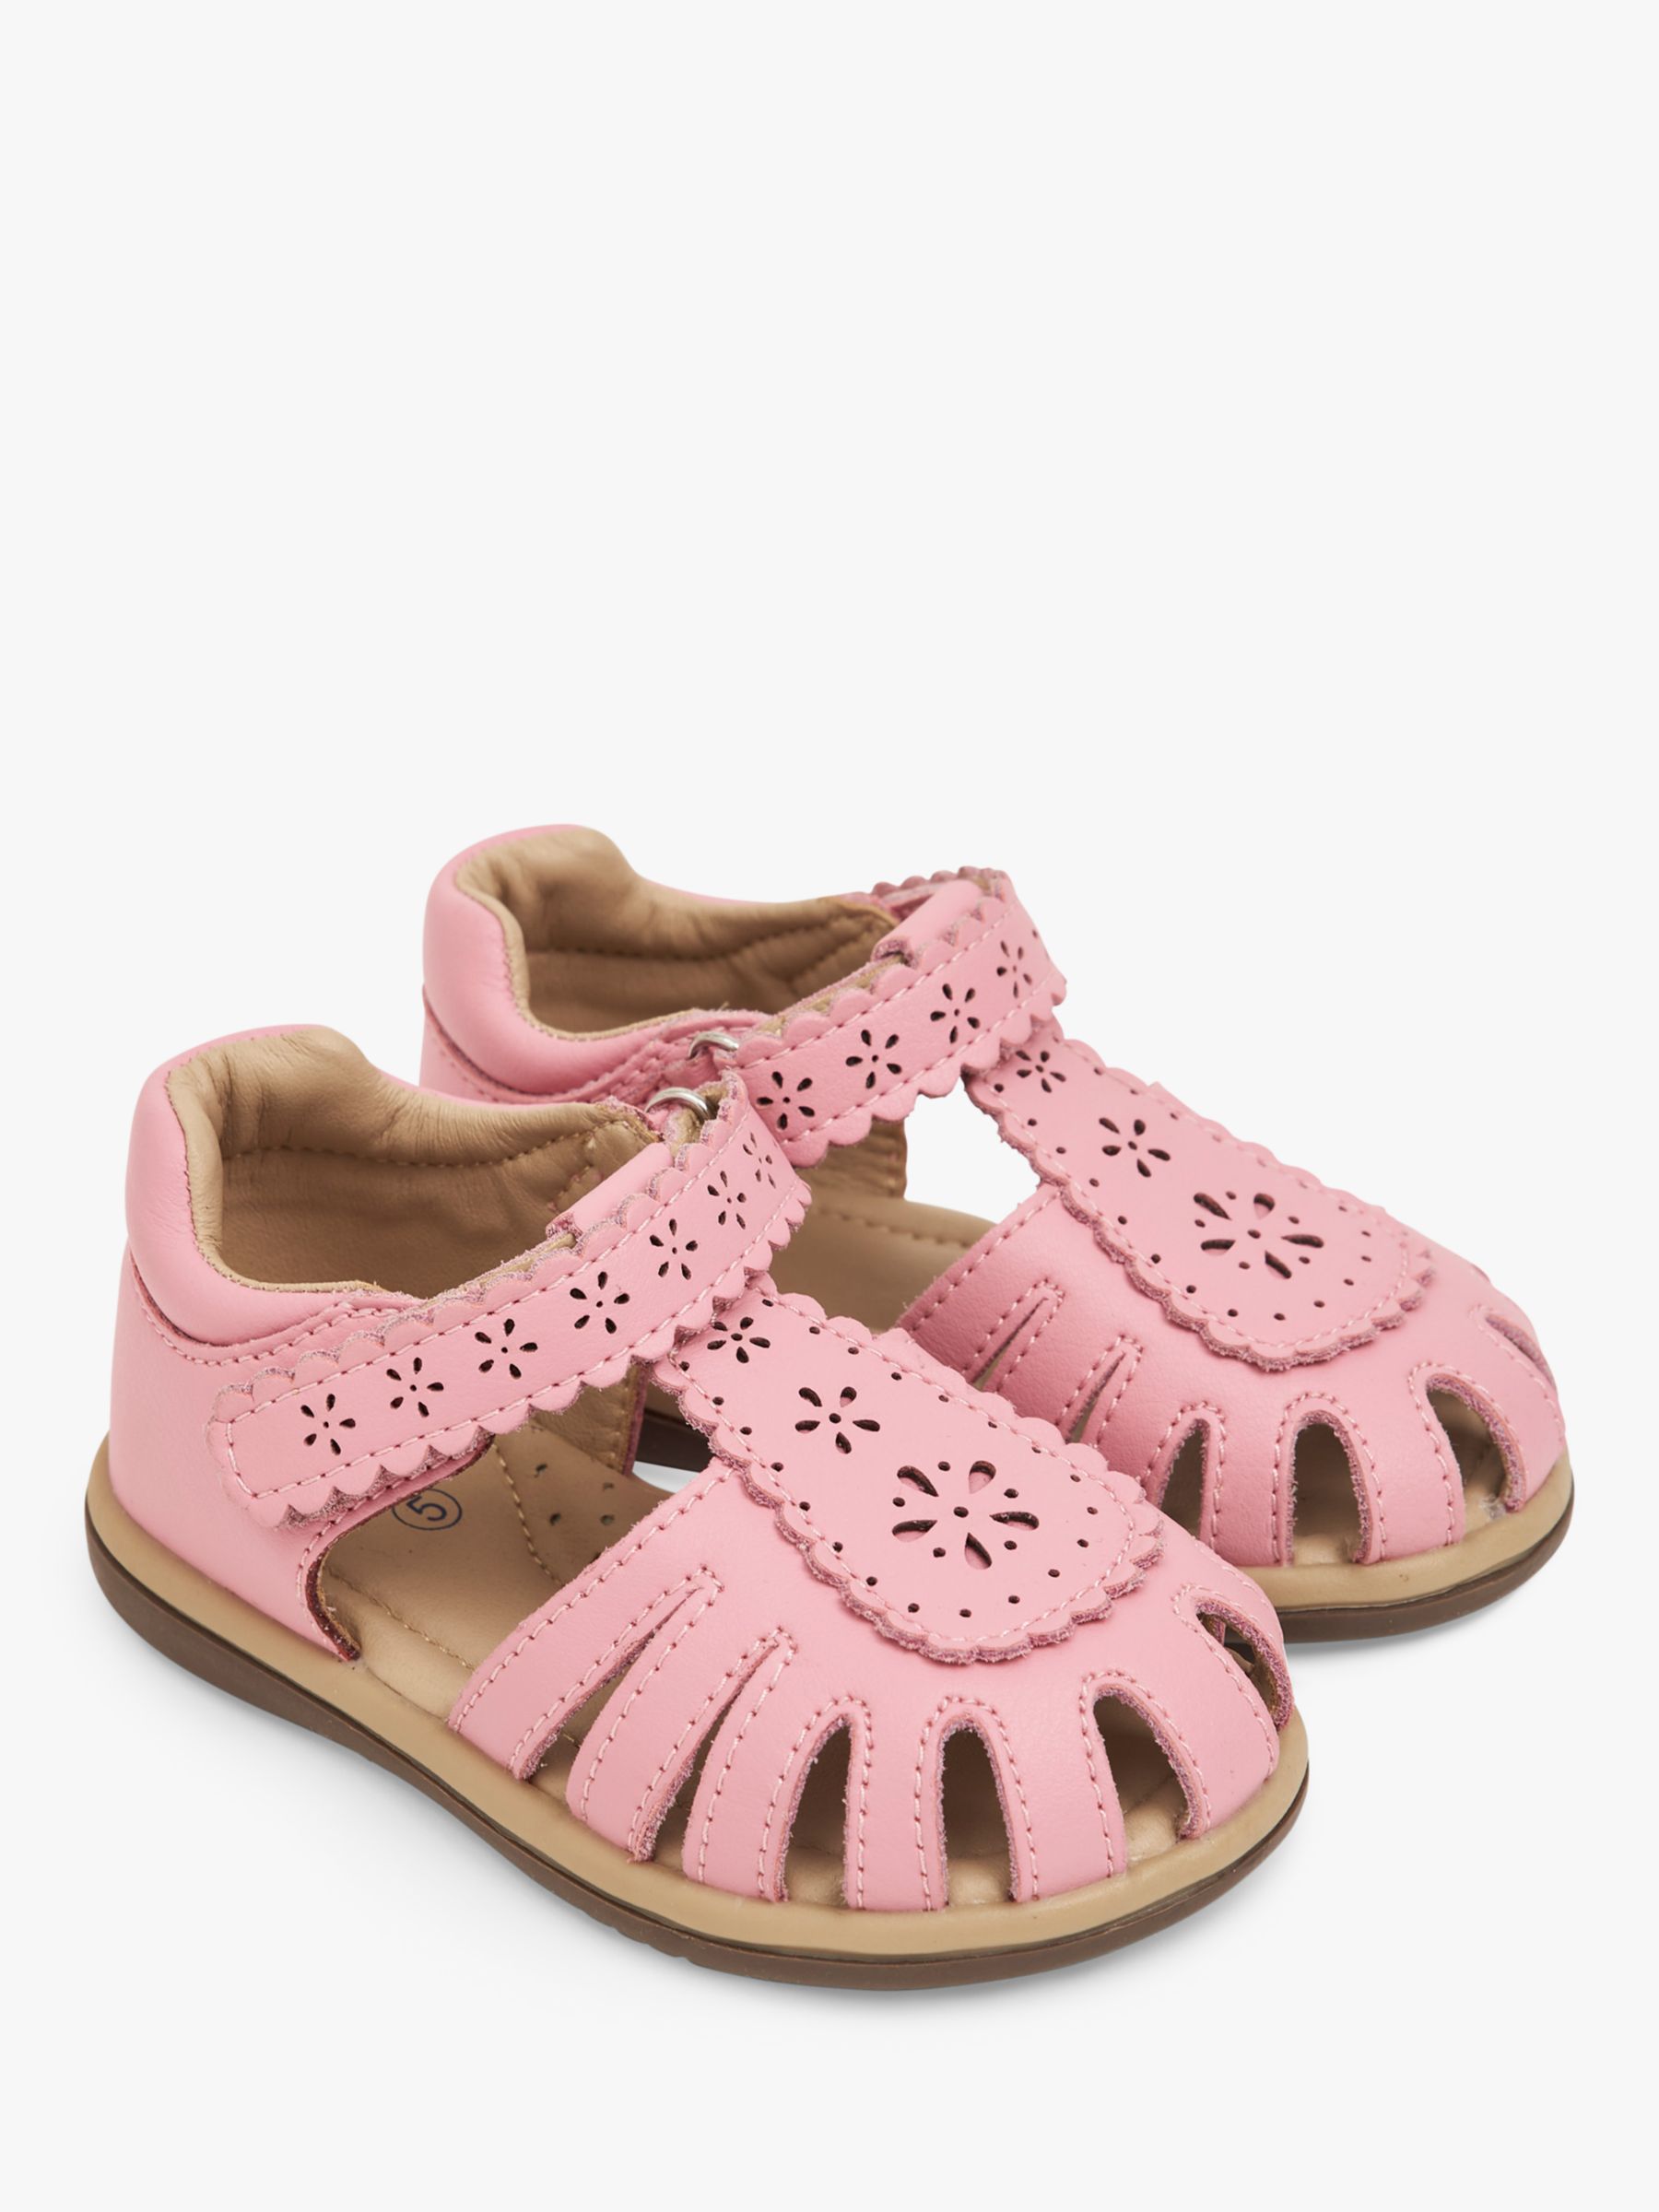 JoJo Maman Bébé Kids' Leather Floral Etched Sandals, Pink, 8 Jnr